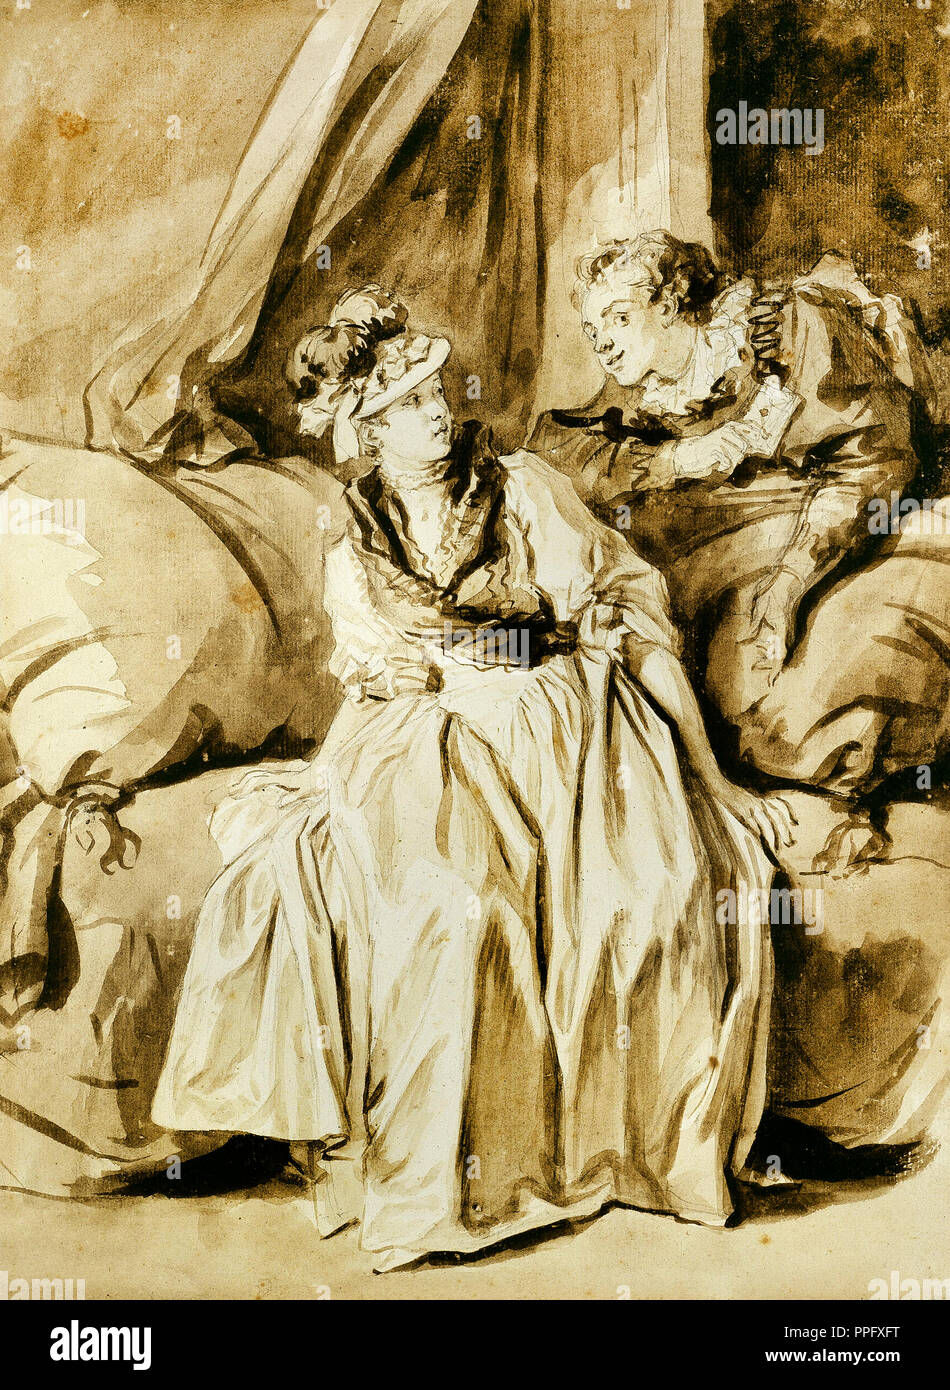 Jean-Honore Fragonard, der Brief oder die Spanische Konversation. Circa 1778. Zeichnung und Aquarell. Kunst Institut von Chicago, USA Stockfoto